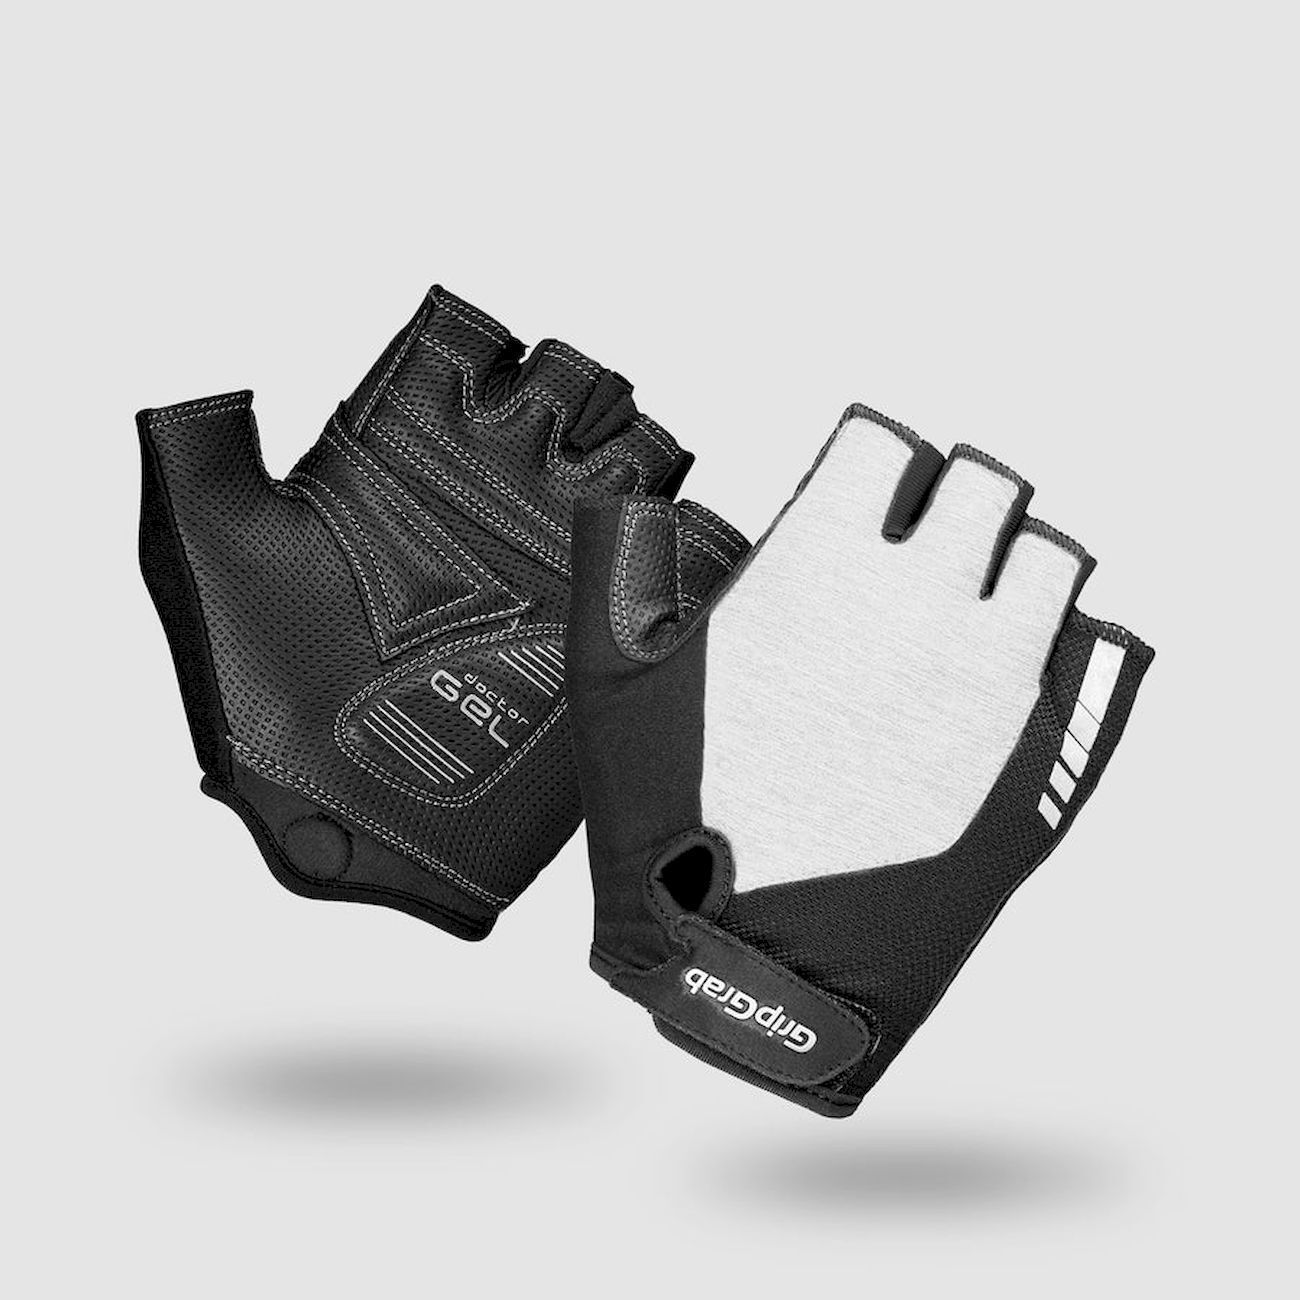 Grip Grab ProGel Padded Gloves - Short finger gloves - Women's